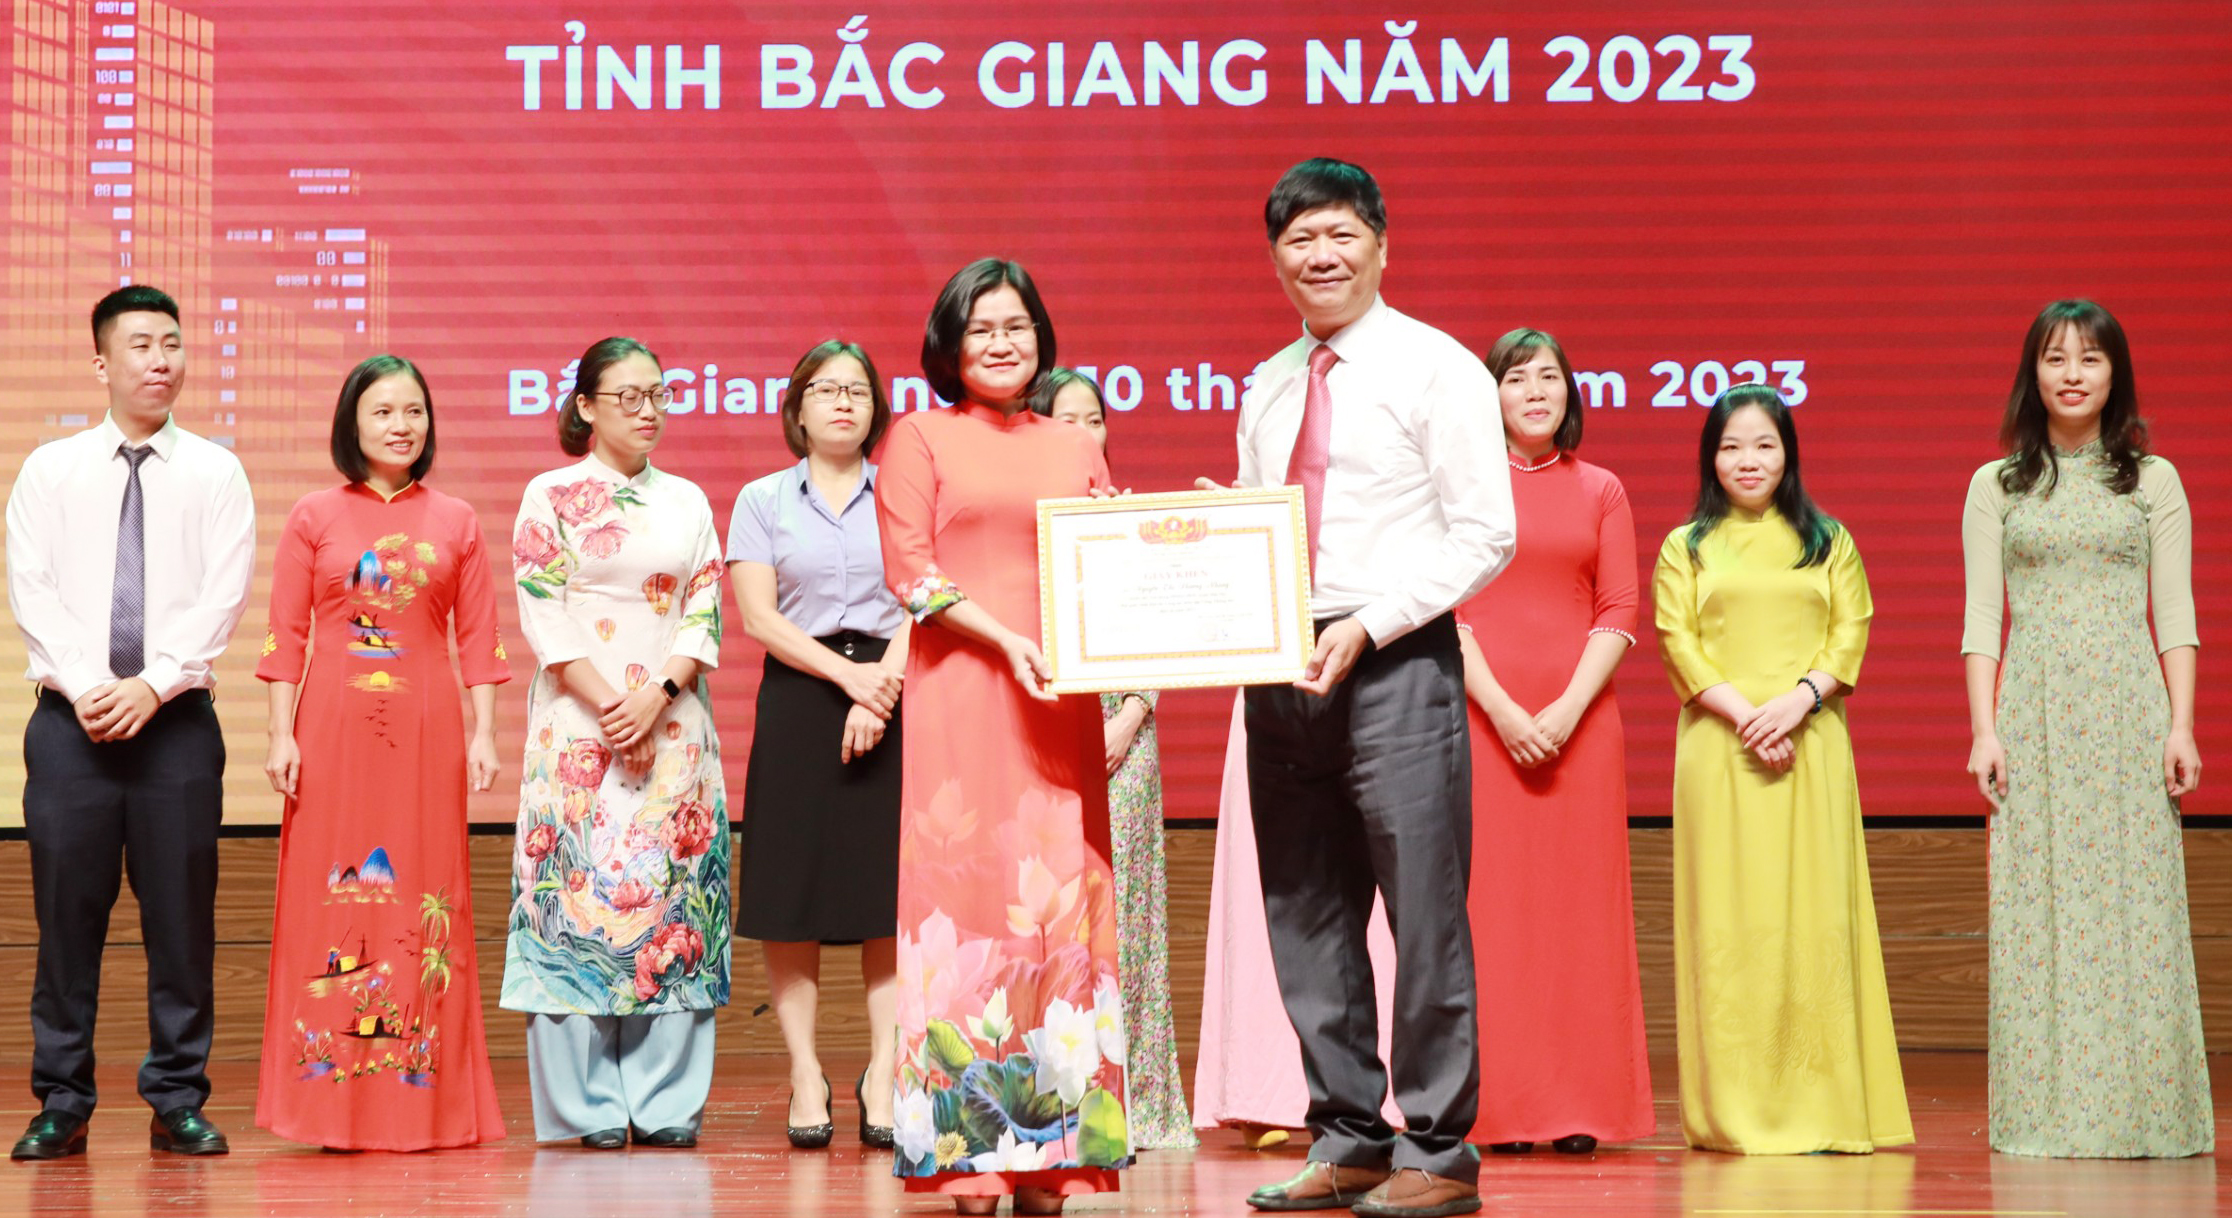 Đồng chí Dương Đại Lâm, Phó Giám đốc Sở Thông tin và Truyền thông trao Giấy khen cho thí sinh giành giải Nhất Hội thi công tác biên tập cổng thông tin điện tử năm 2023.